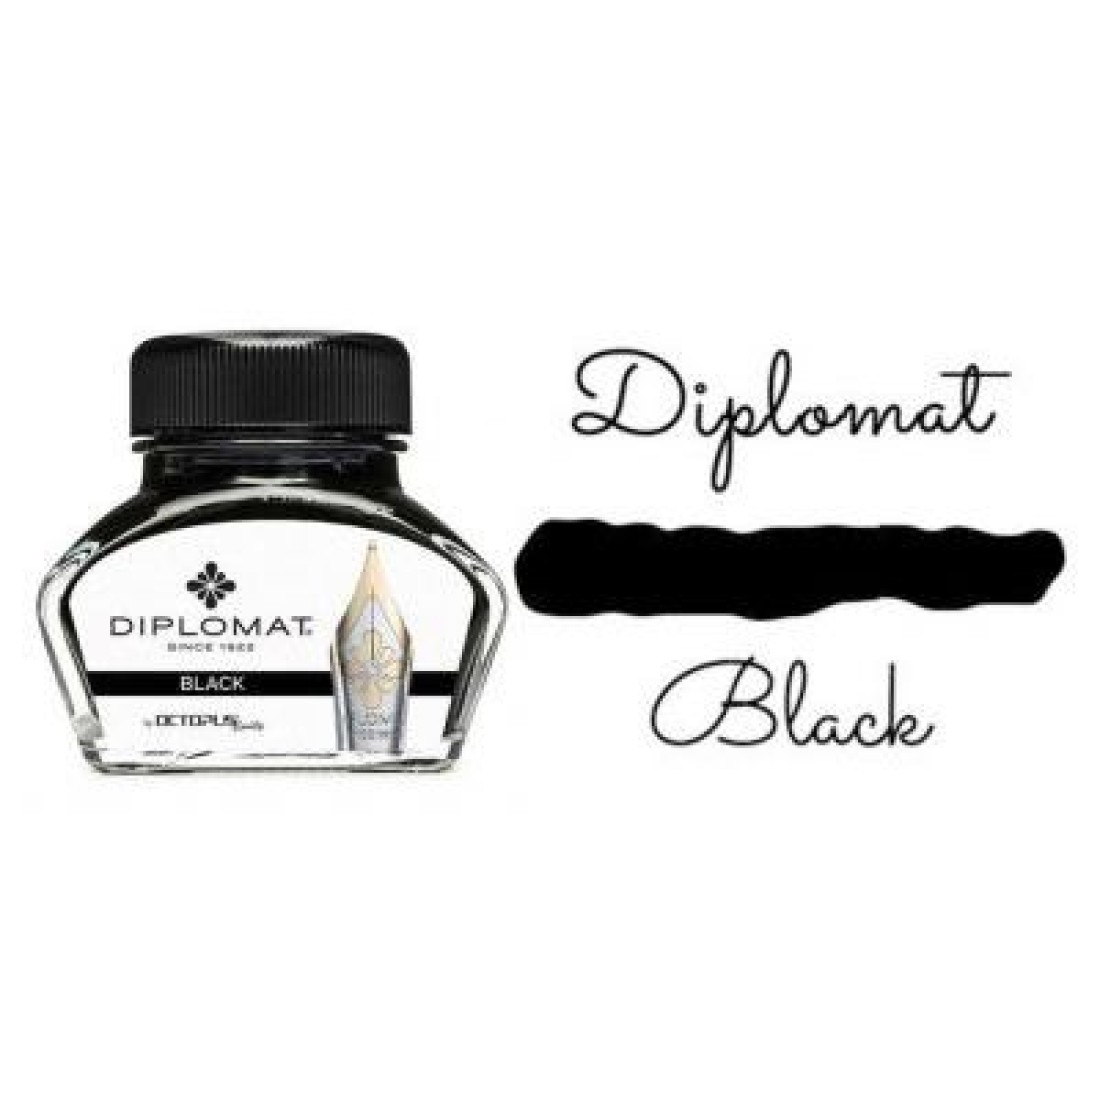 Diplomat Black Ink - Ink Bottle